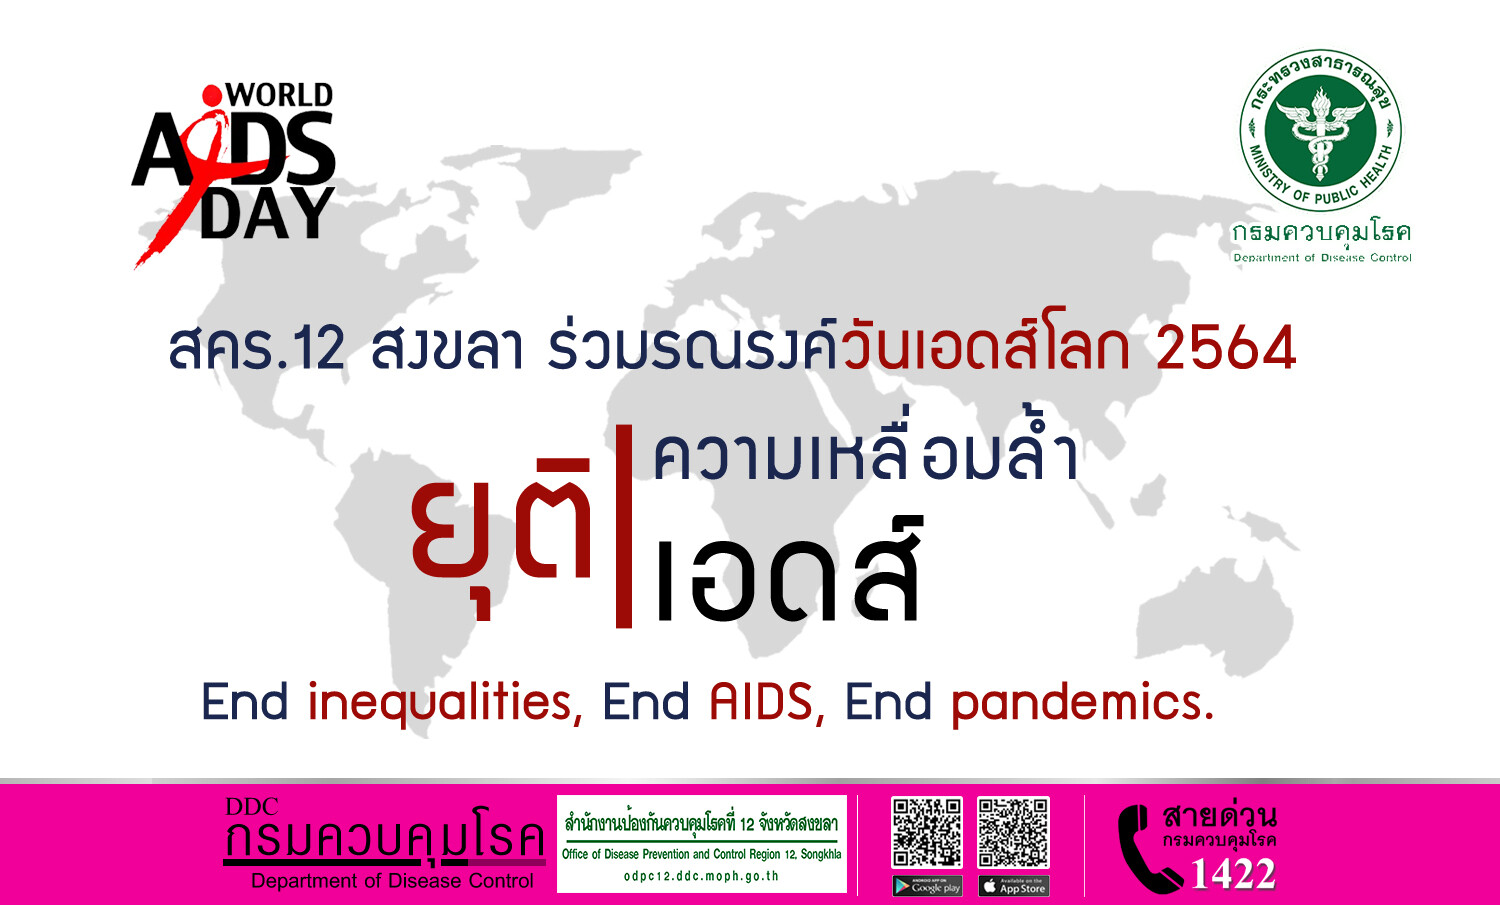 สคร.12 สงขลา ร่วมรณรงค์วันเอดส์โลก 2564 "ยุติความเหลื่อมล้ำ ยุติเอดส์"